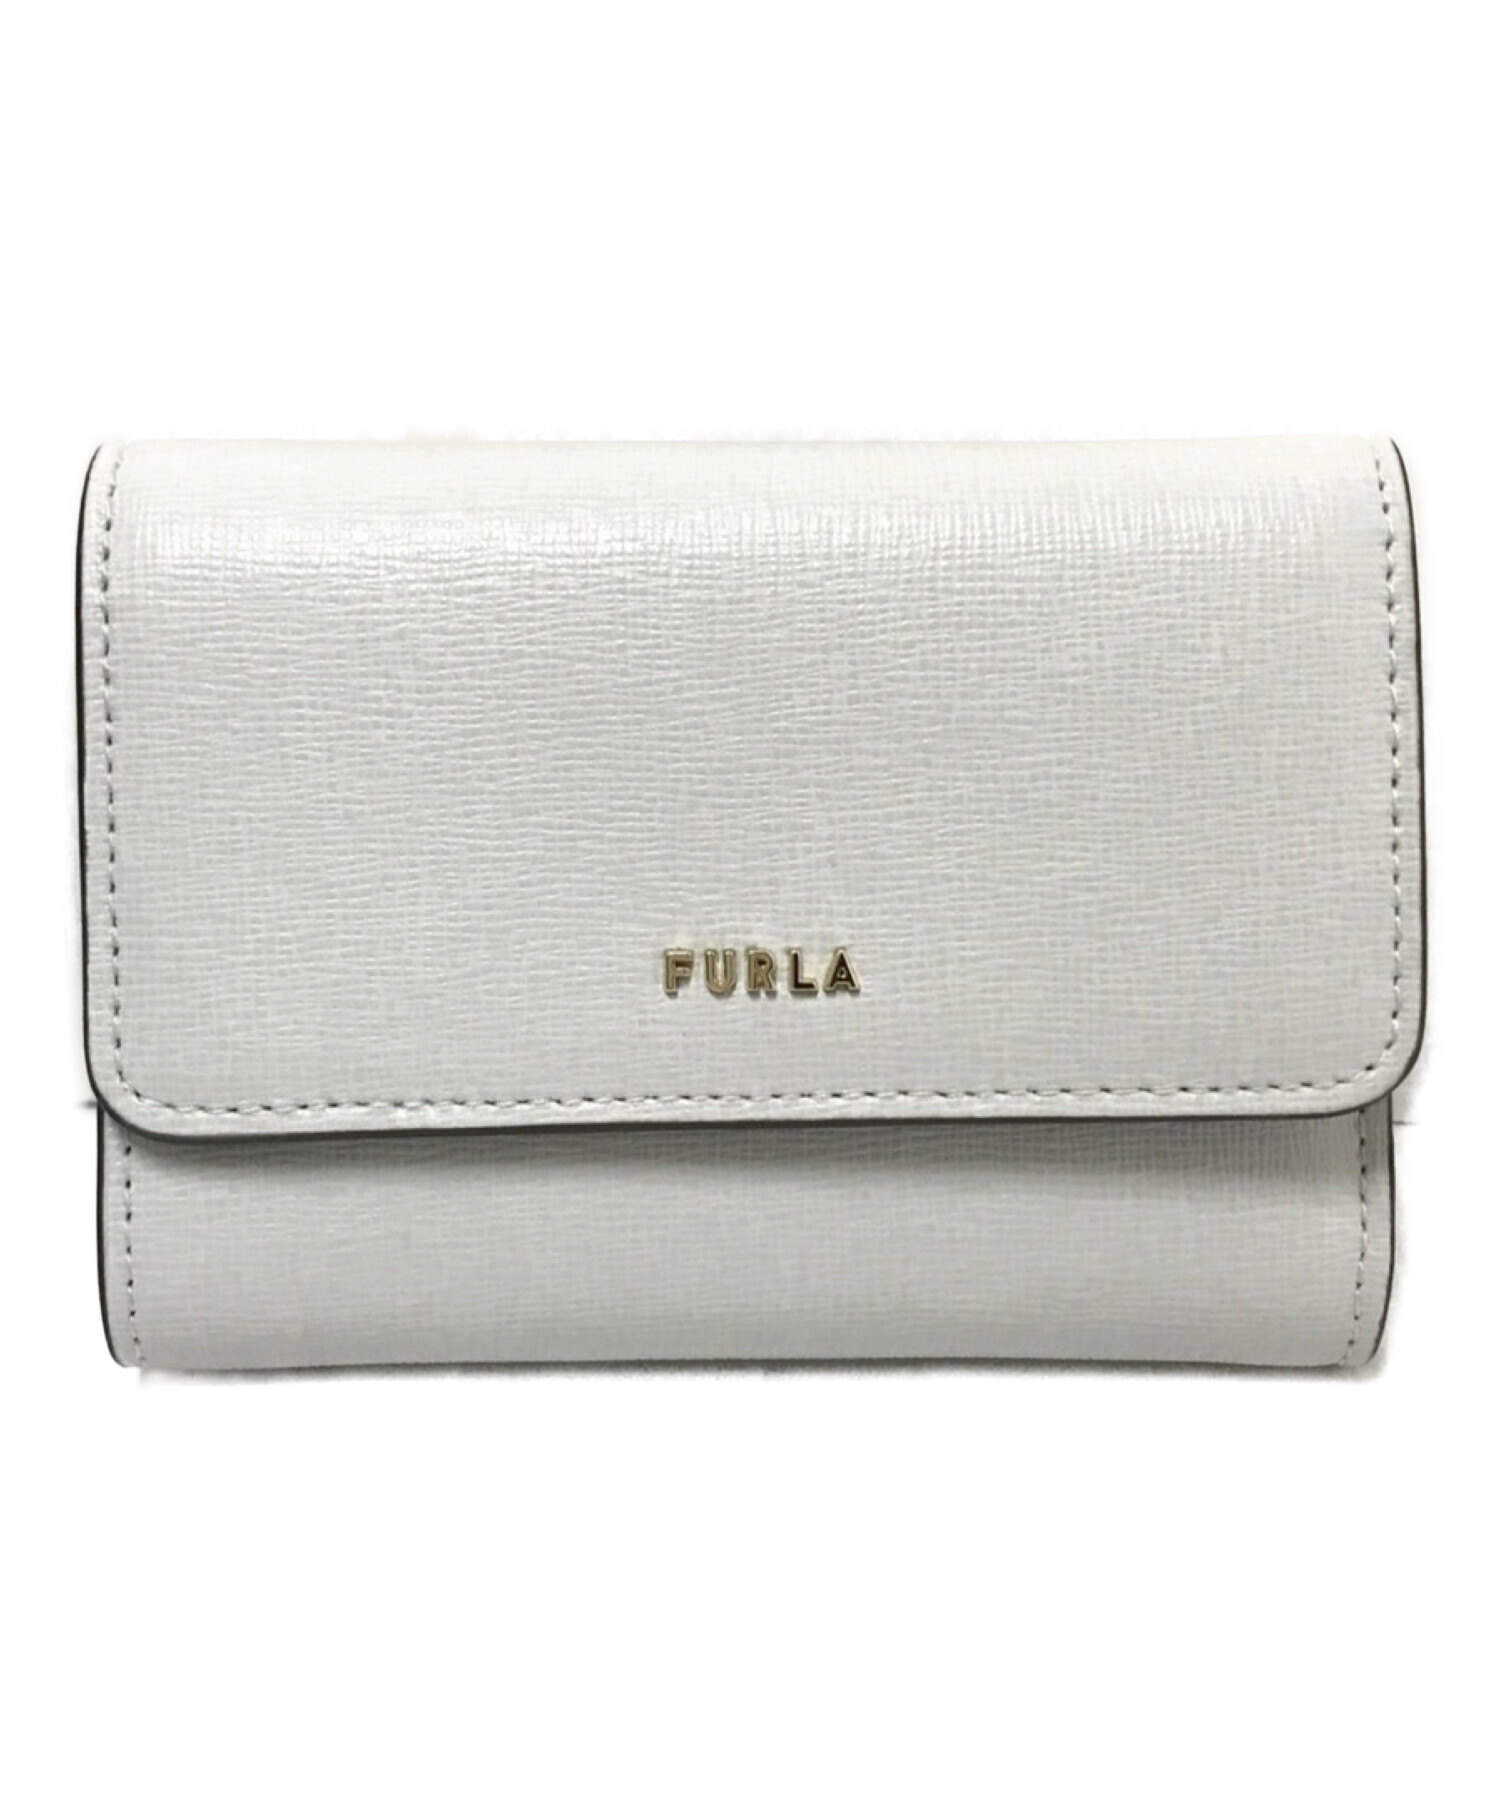 完売カラー‼︎新品 FURLA(フルラ) 折り財布 ライトブルー